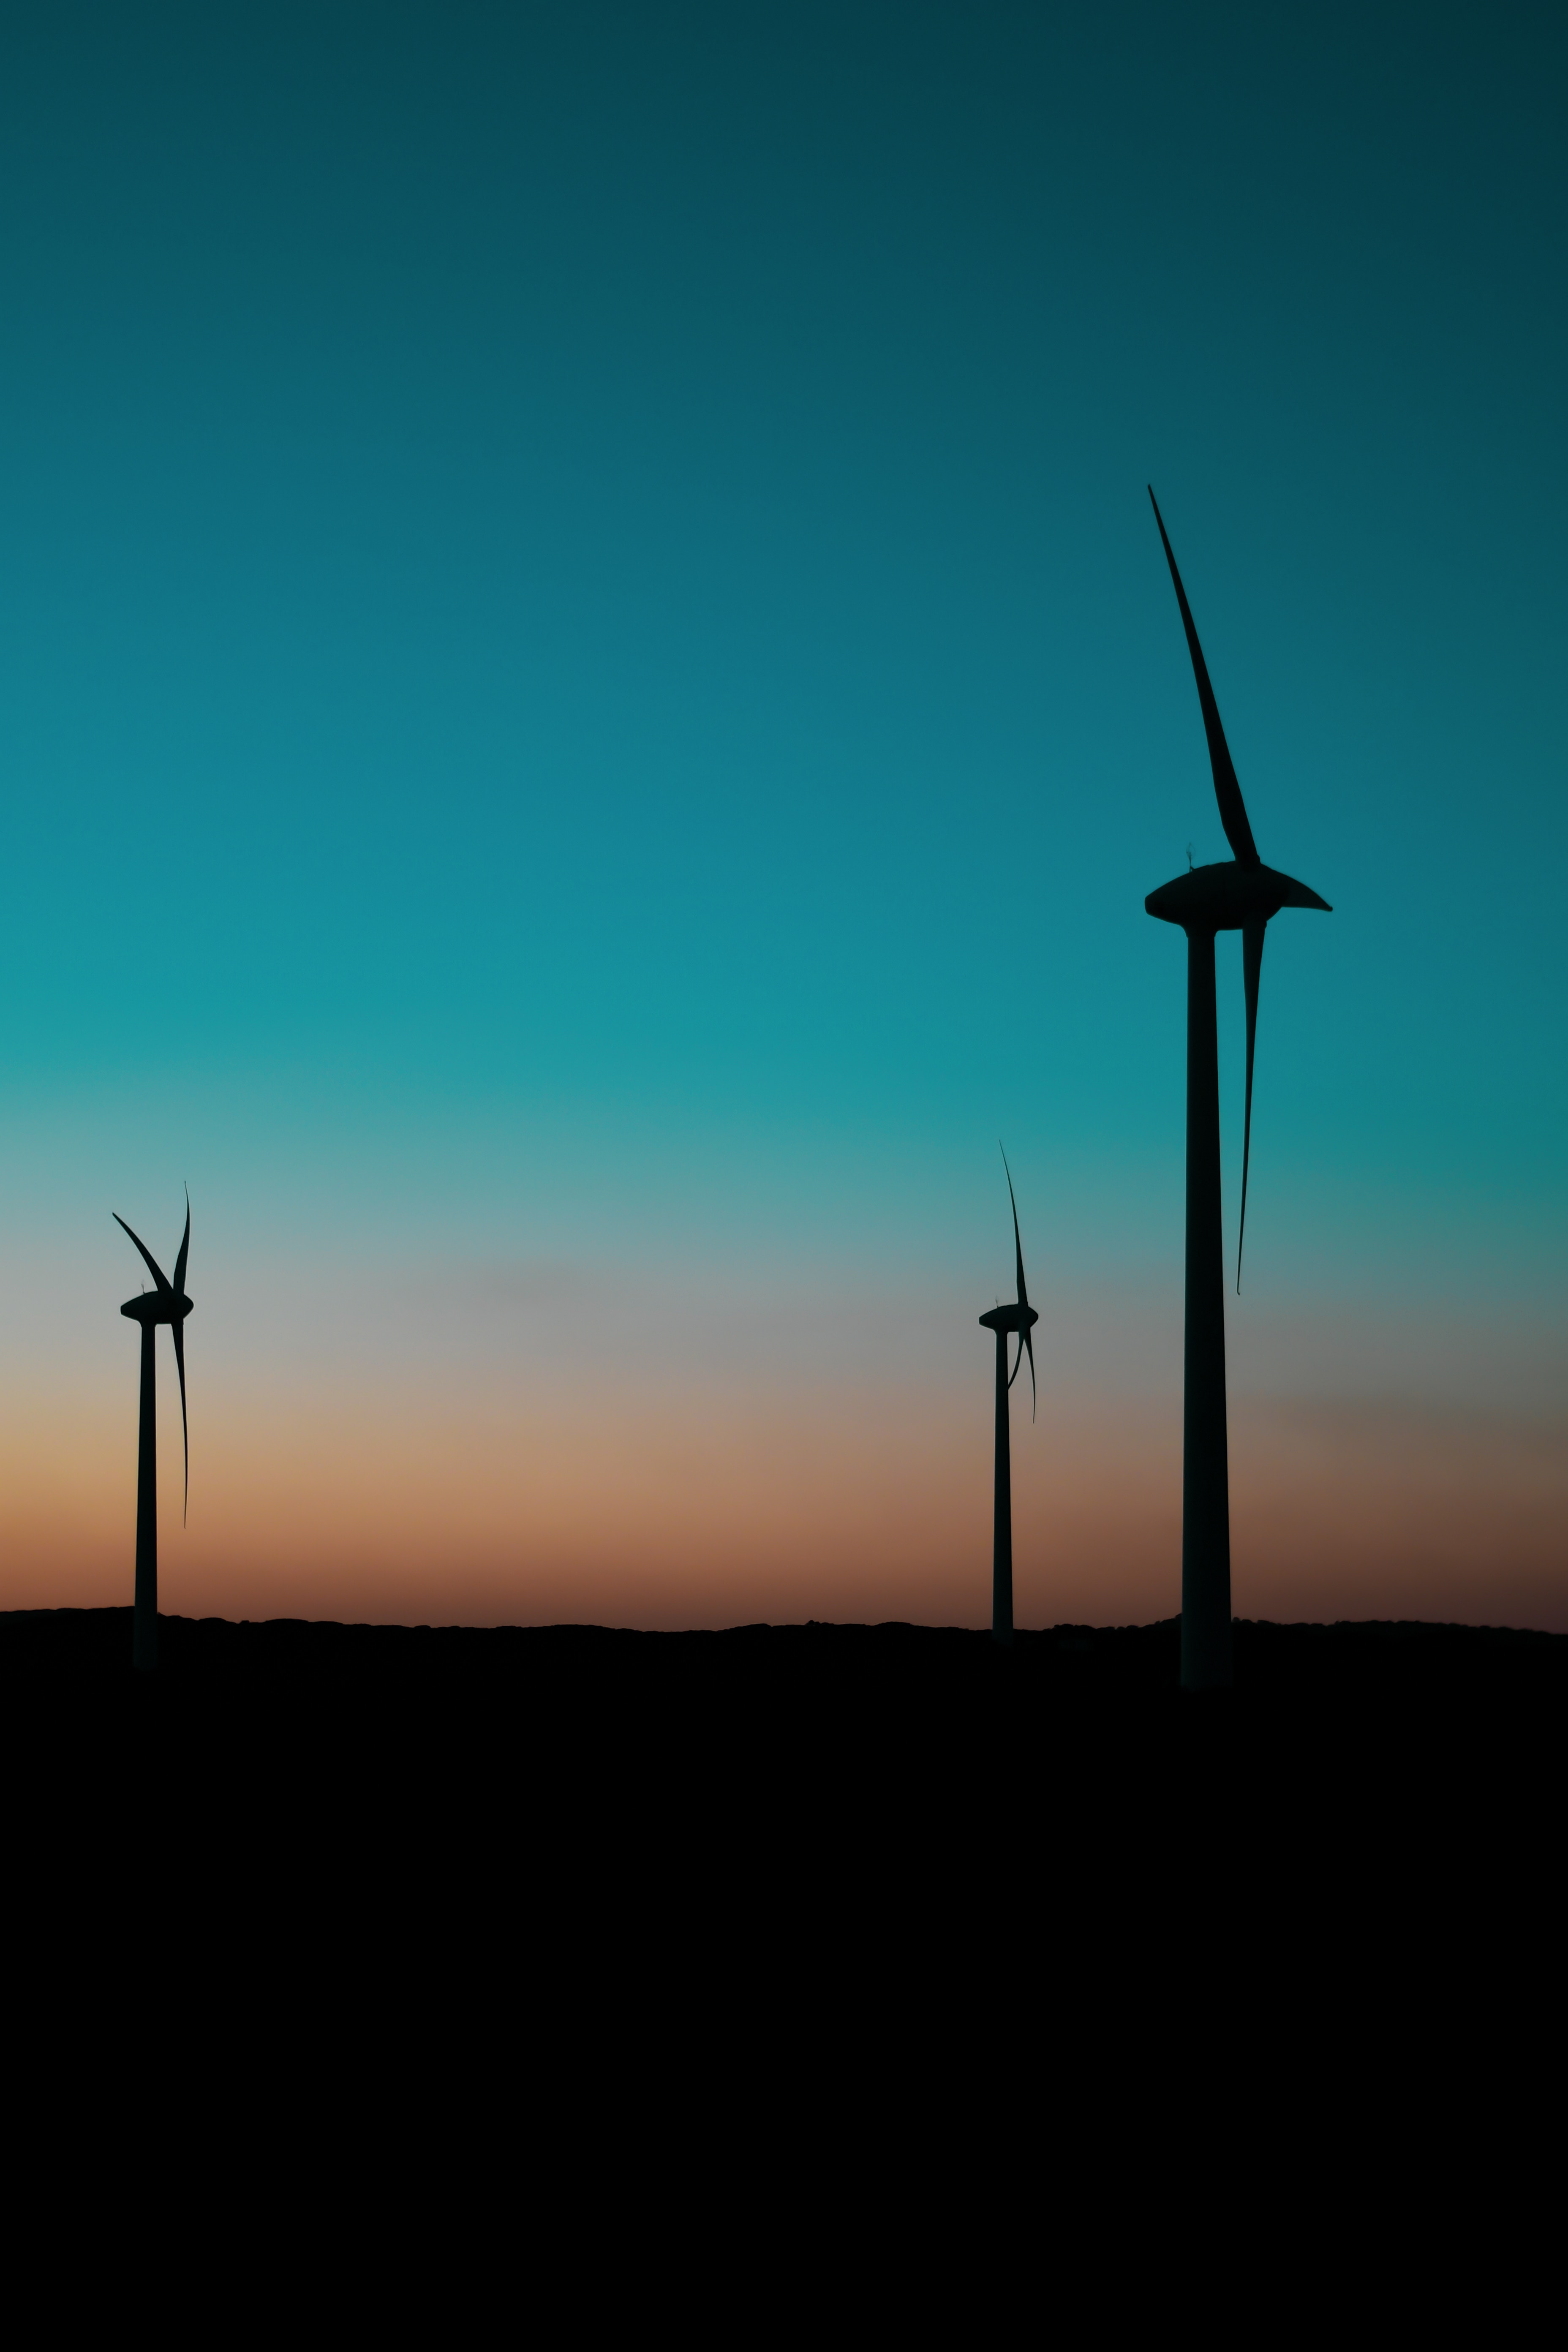 dark, twilight, dusk, pillars, posts, wind power plant, turbines, turbine, blades 1080p